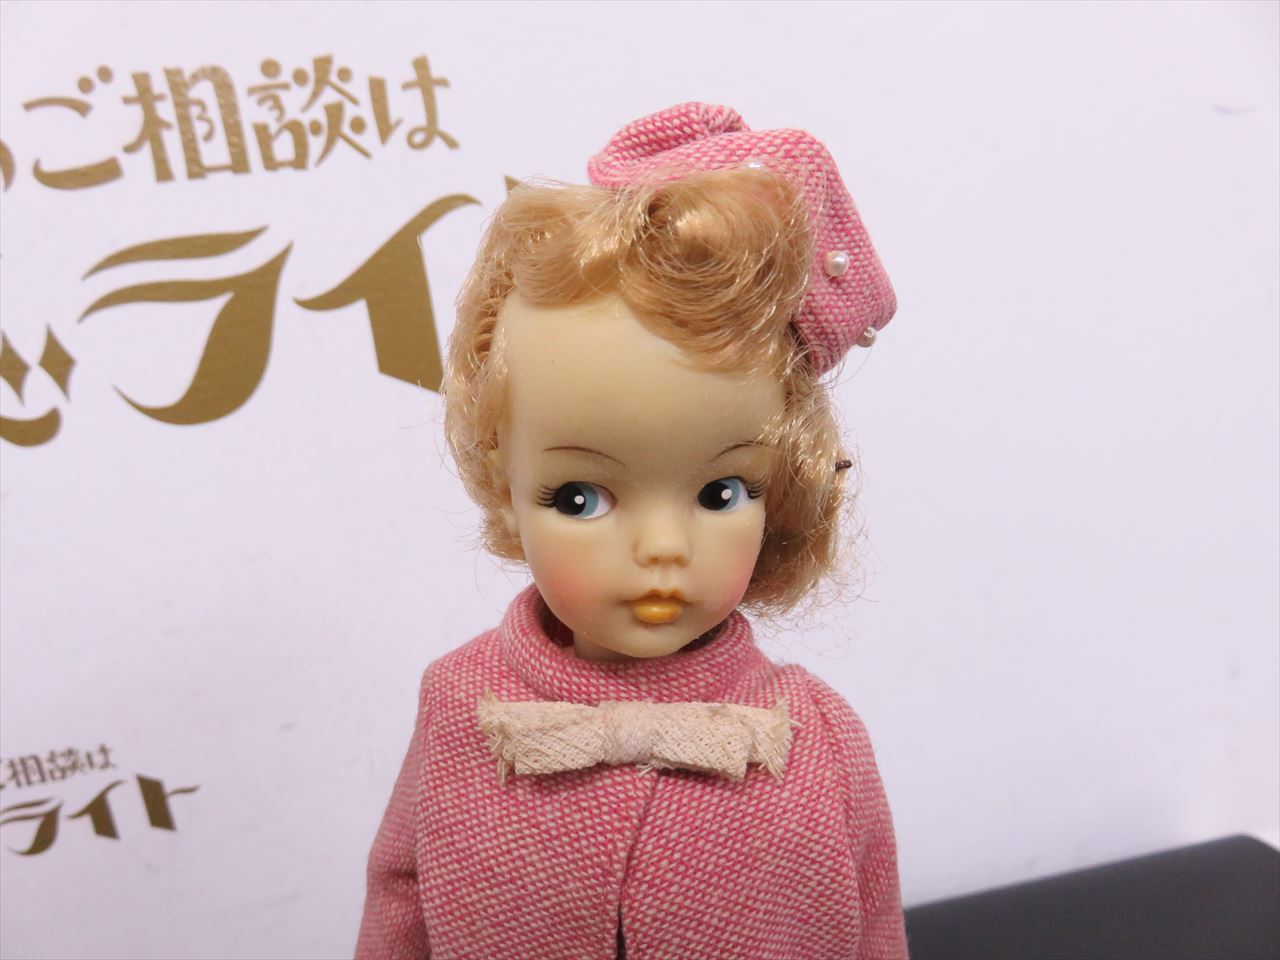 日本製 タミーちゃん - 昔のおもちゃ買取専門店モズライト出張買取